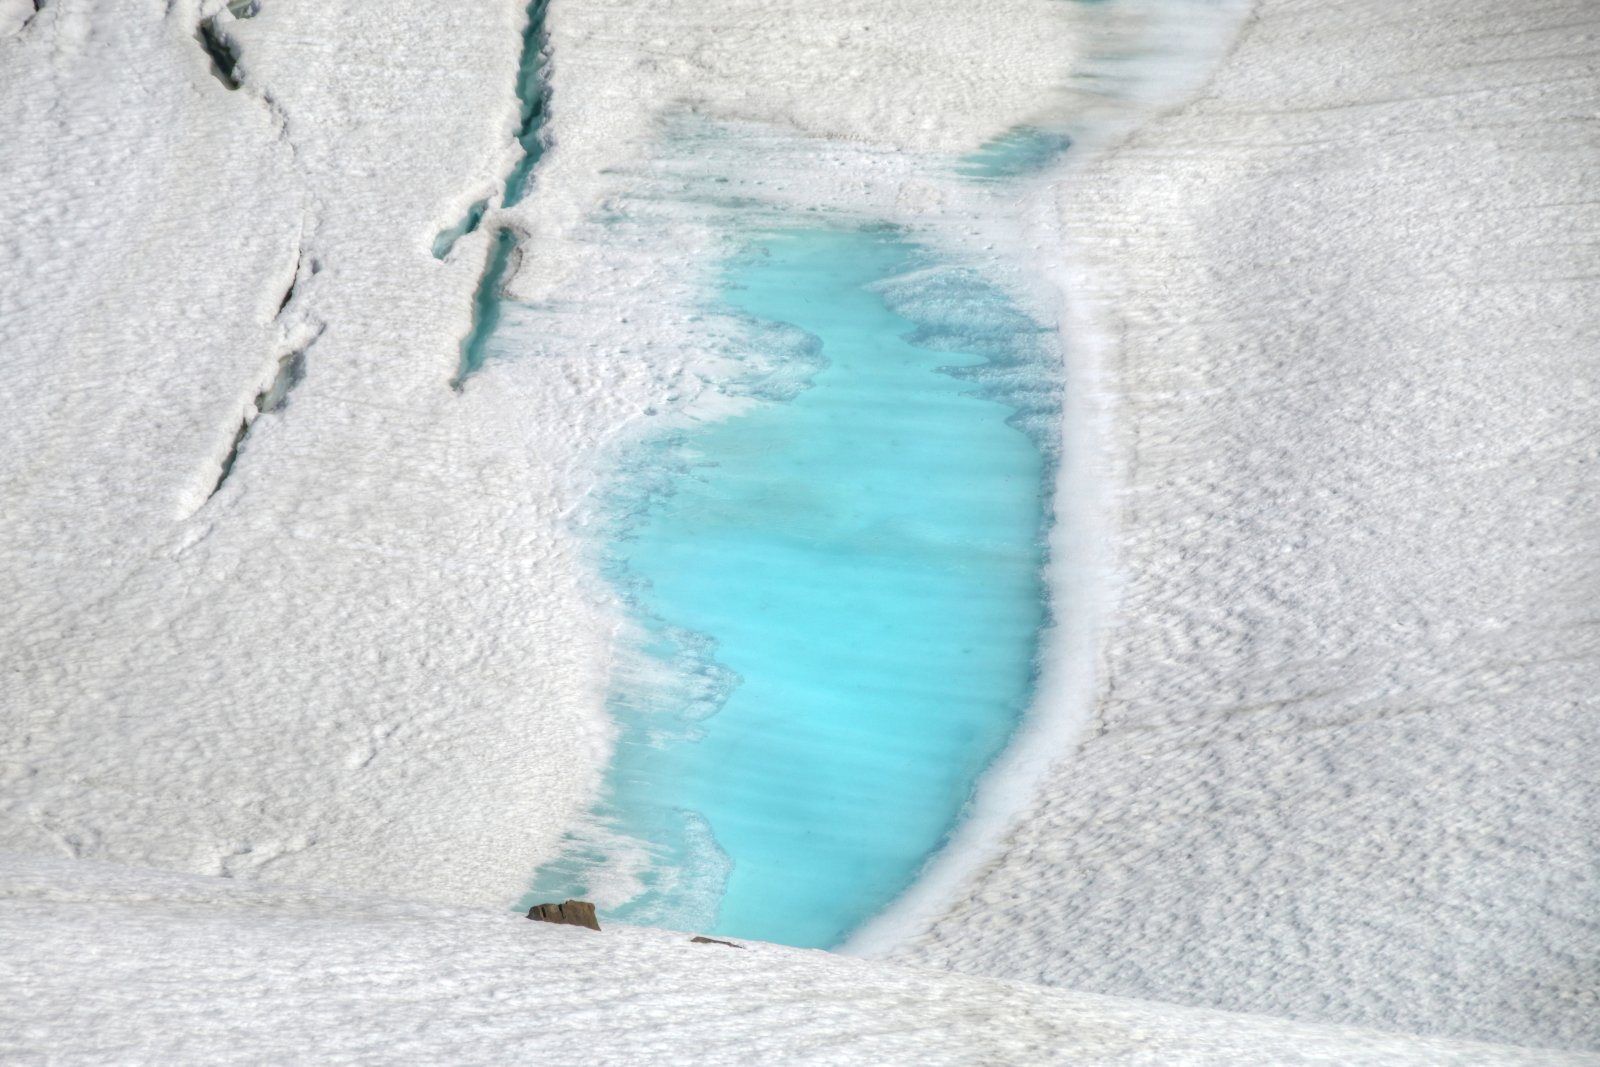 Copa Kapruna, avagy a Gletschersee a Sonnenkar hatüléses aljától egy hógolyódobásnyira